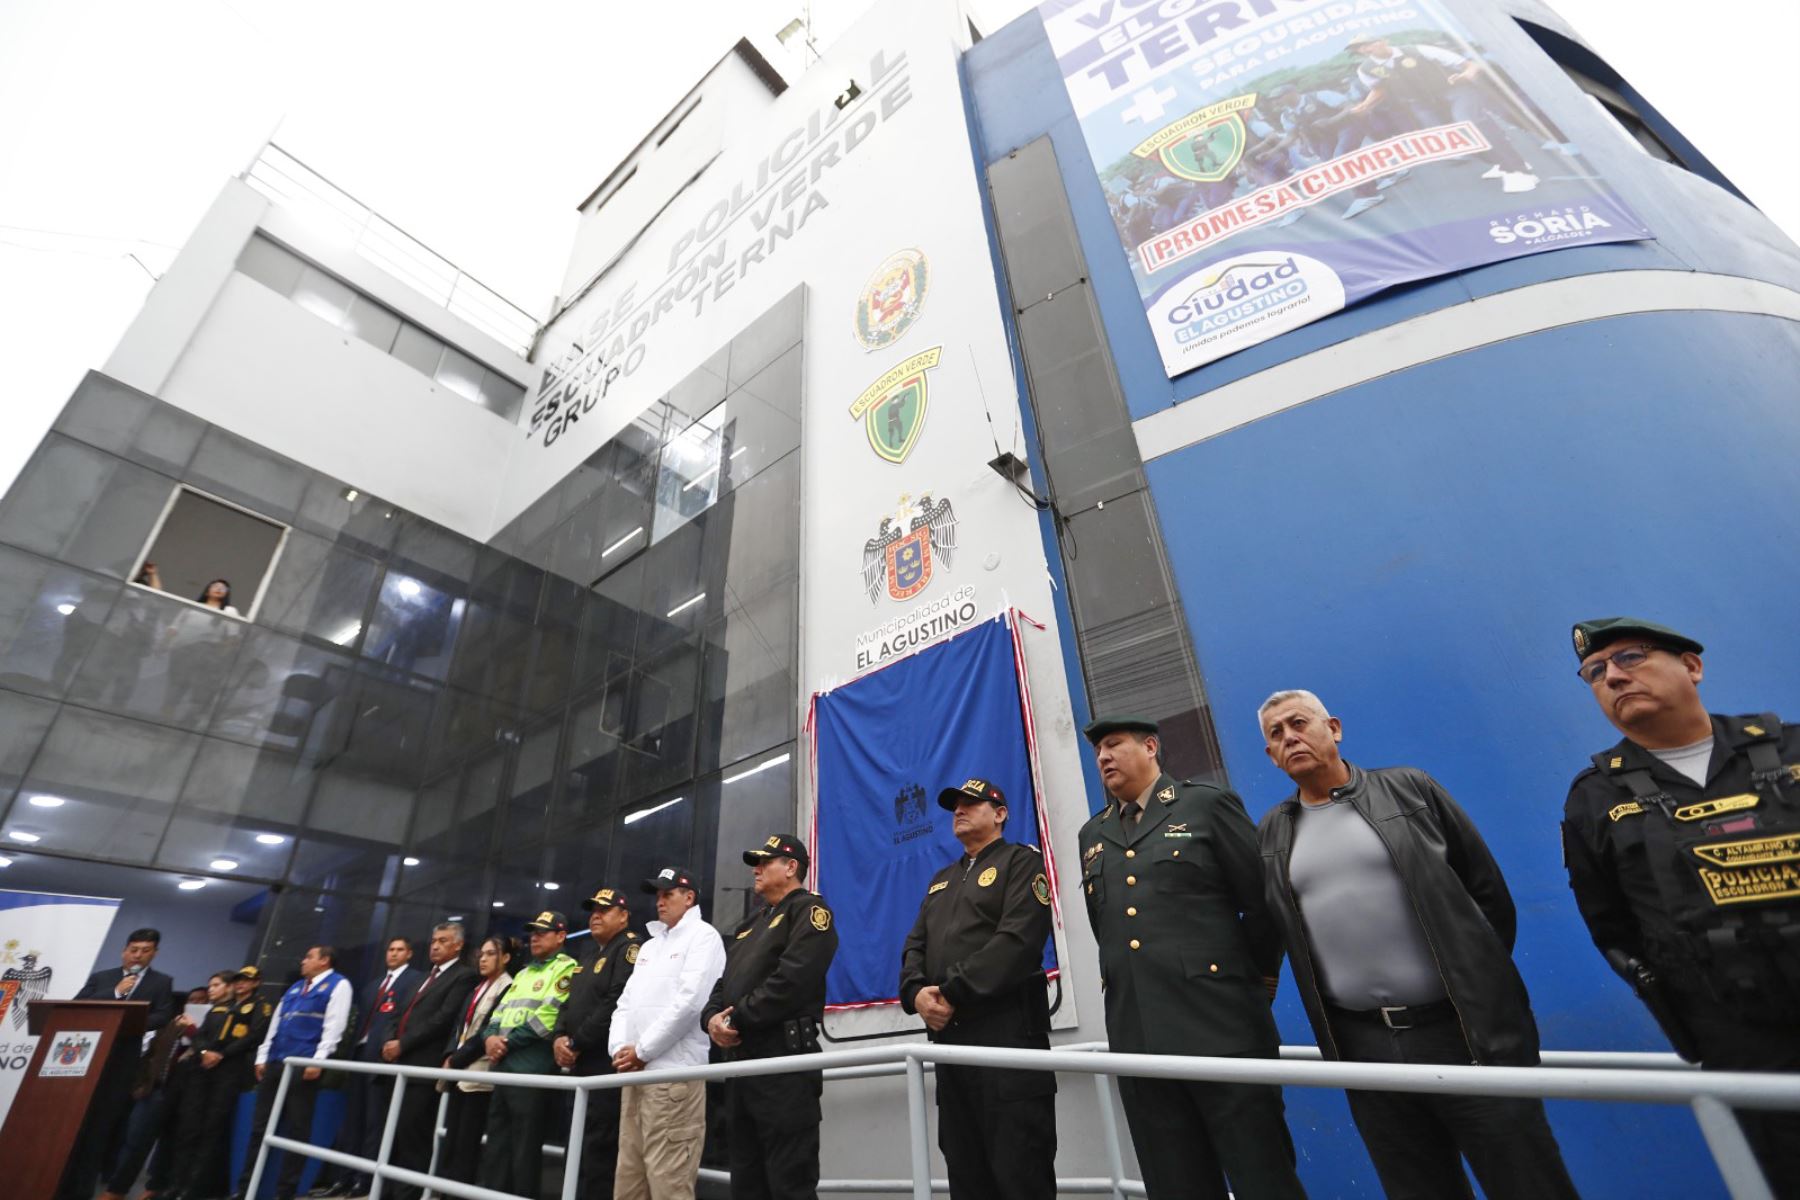 La Policía Nacional del Perú inauguró la Base del Grupo Terna en El Agustino, con el fin de fortalecer la seguridad ciudadana en dicha zona de Lima. Foto: ANDINA/Daniel Bracamonte